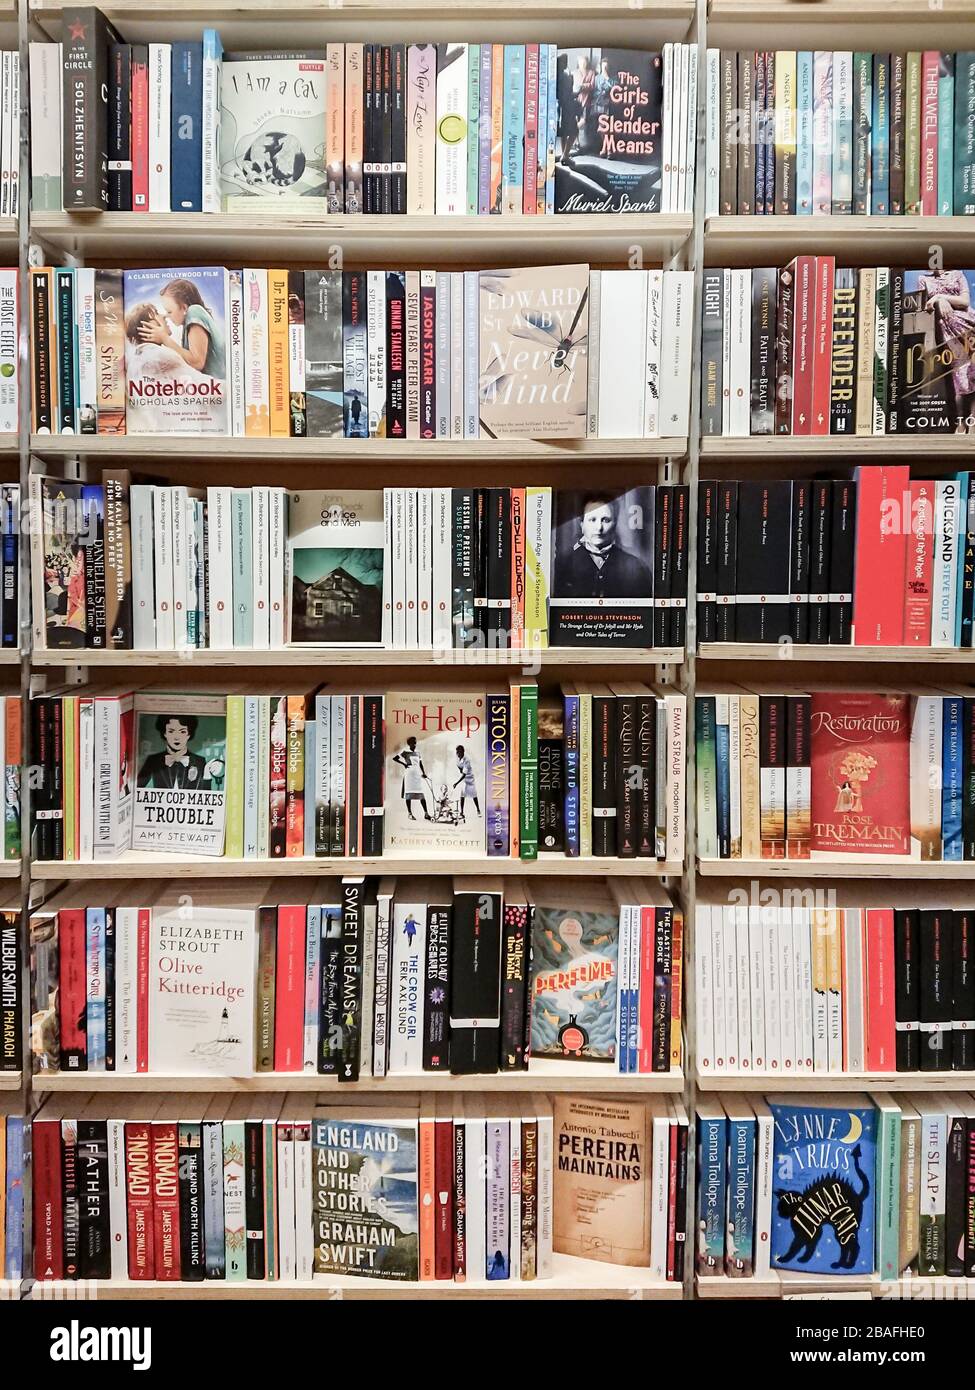 Negozio di libri. Immagine a frame completo di libri cartacei e romanzi di  narrativa classica e moderna sugli scaffali di un negozio di libri Foto  stock - Alamy